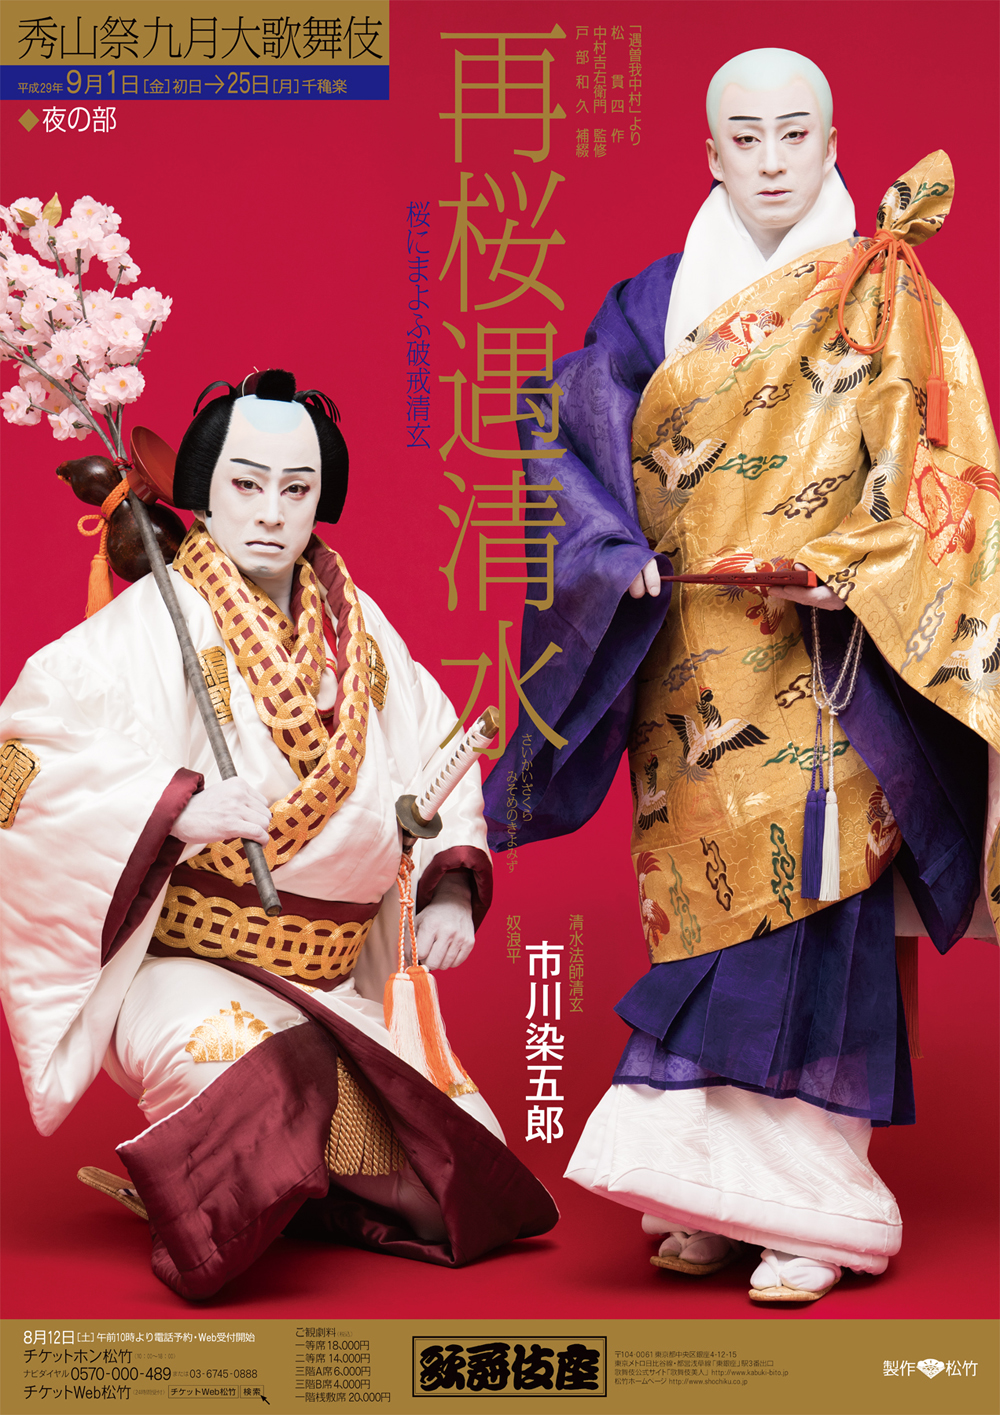 歌舞伎座「秀山祭九月大歌舞伎」特別ポスター公開